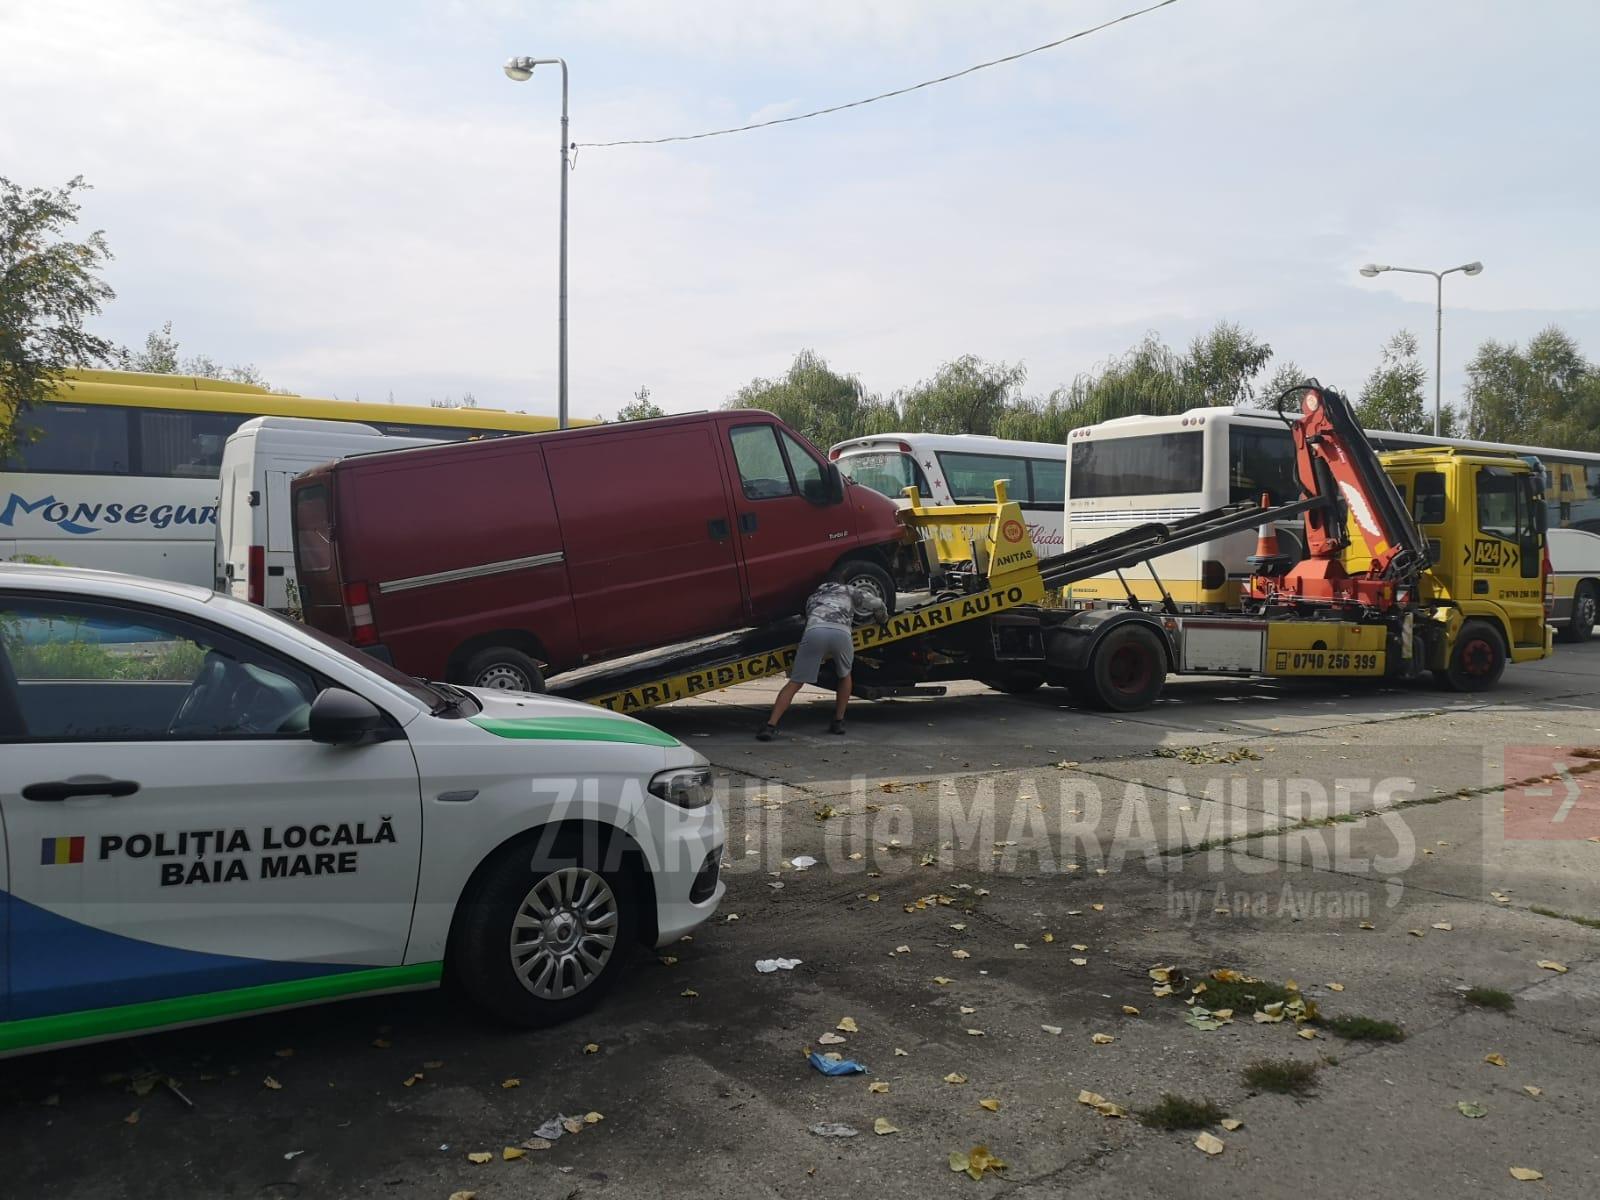 Baia Mare: Polițiștii locali au ridicat autovehiculele abandonate de pe cinci străzi și două bulevarde